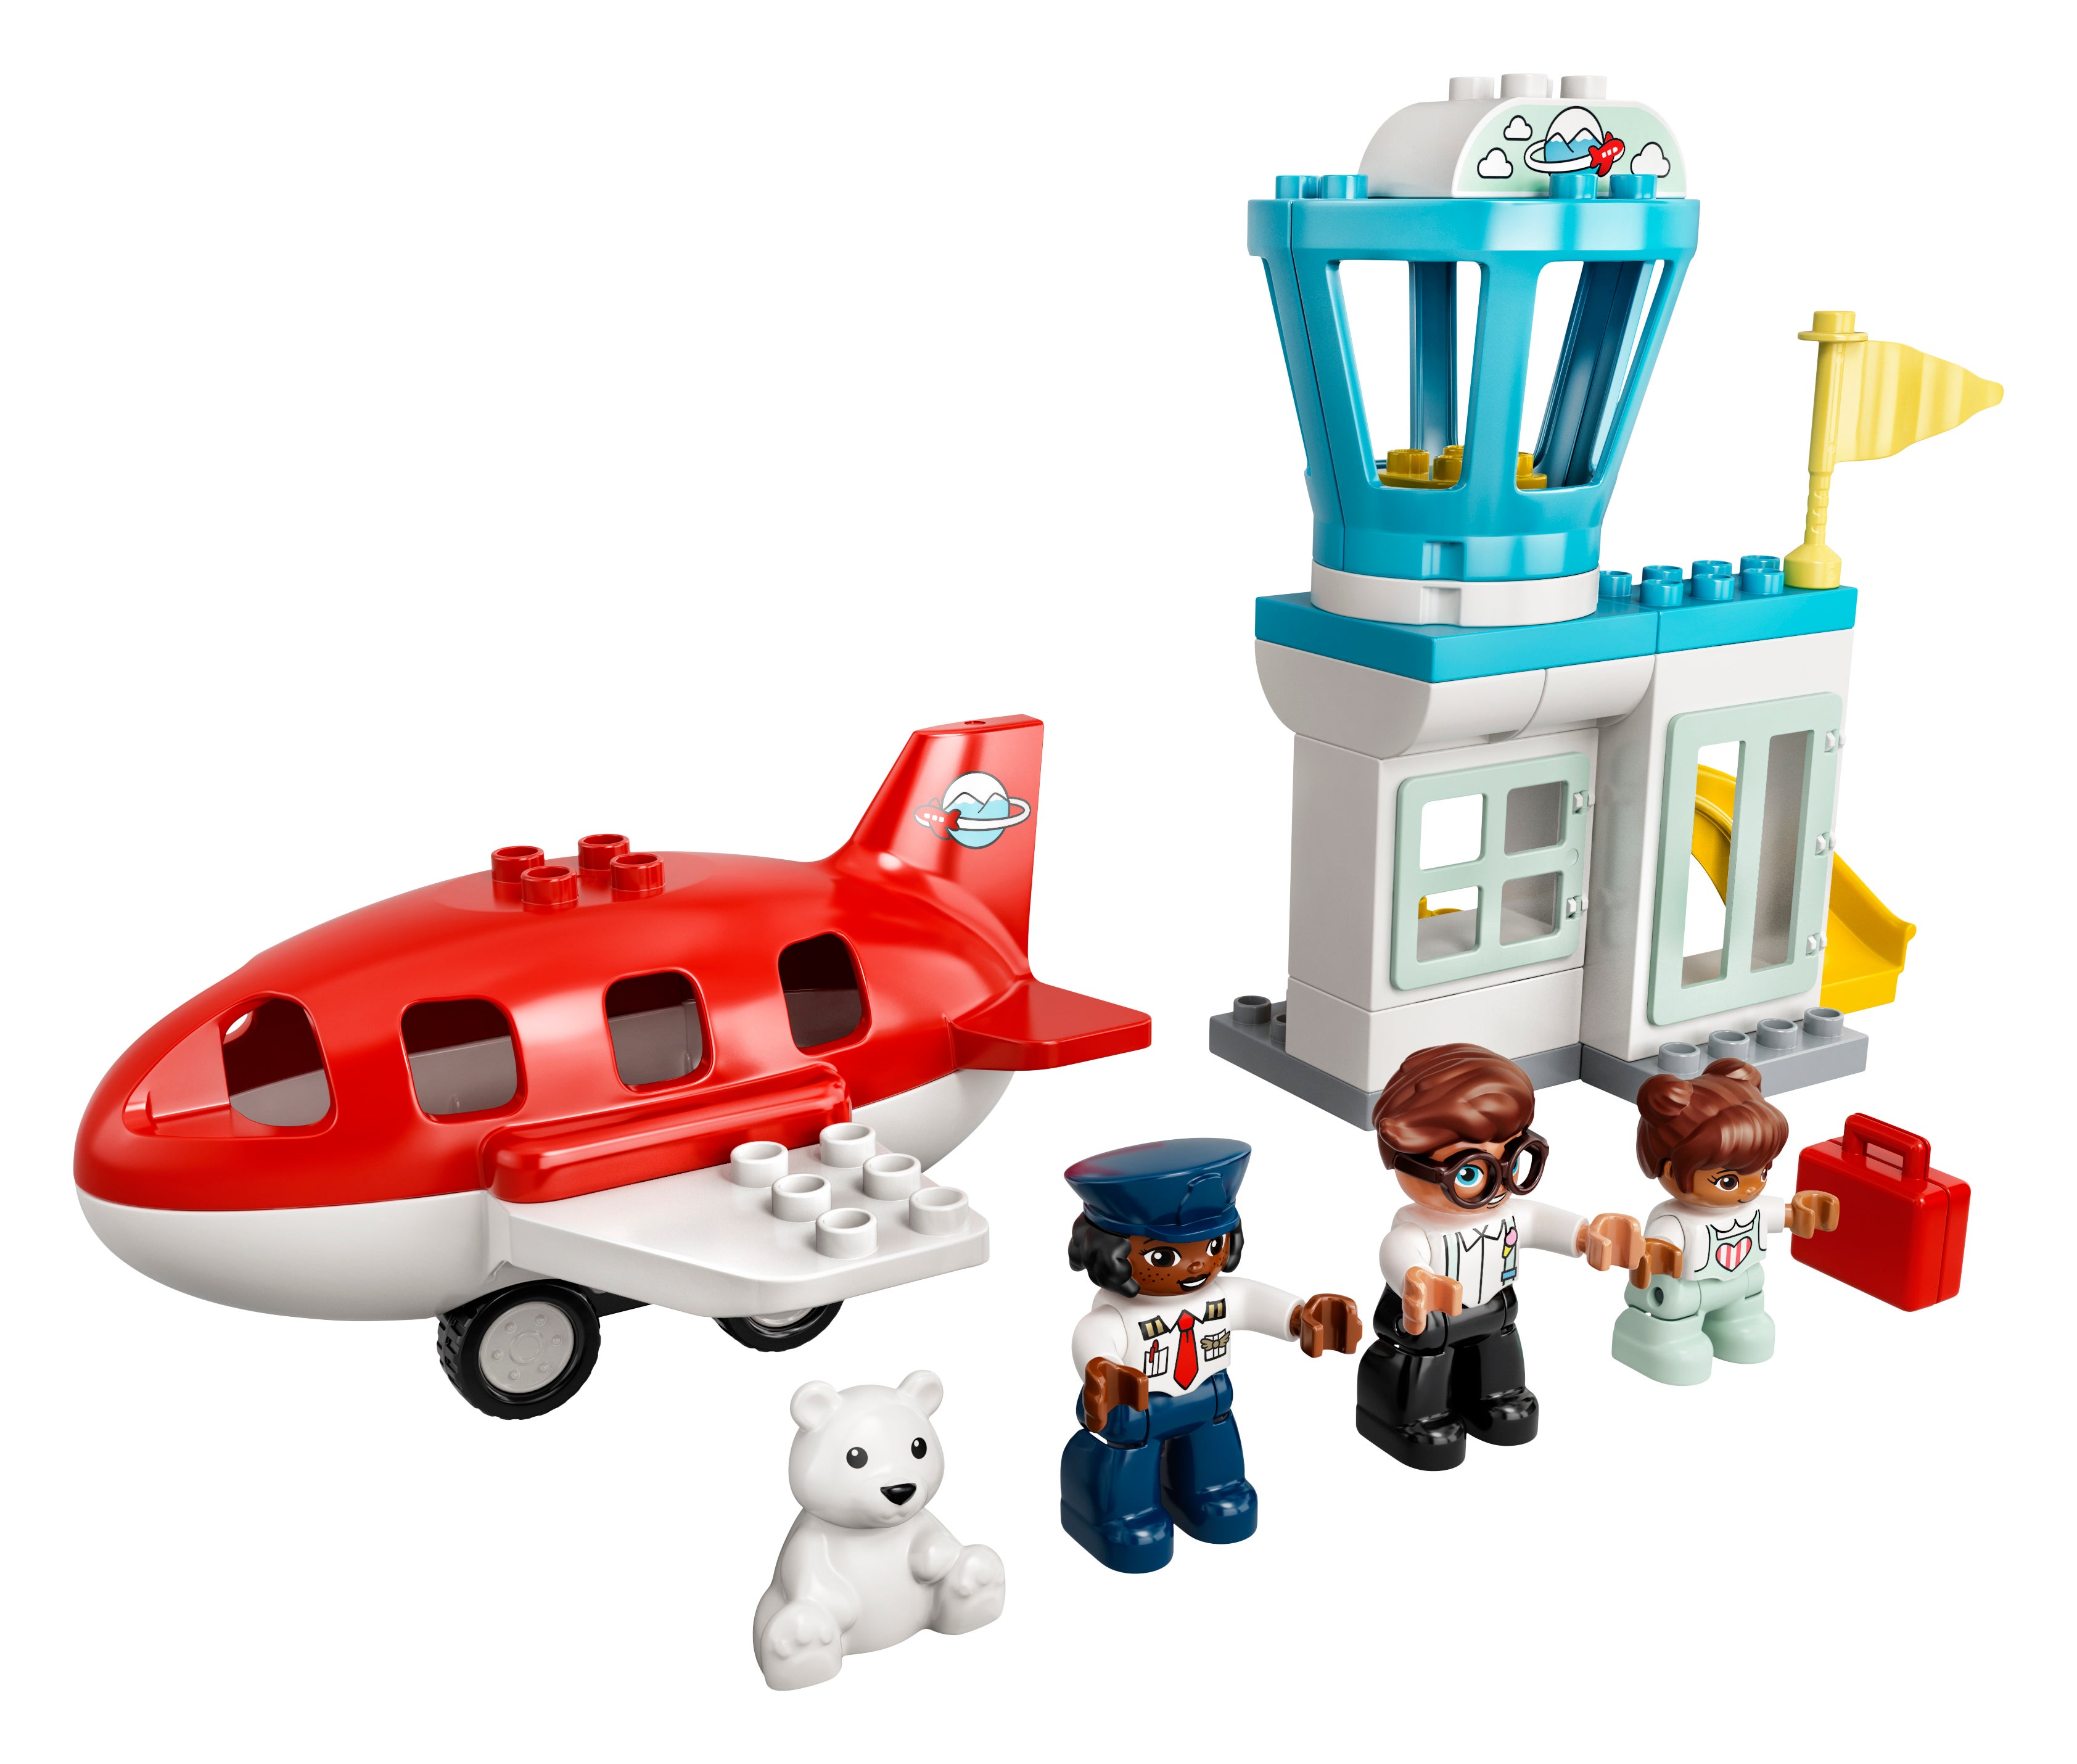 Конструктор LEGO Duplo Town «Самолет и аэропорт» 10961 / 28 деталей